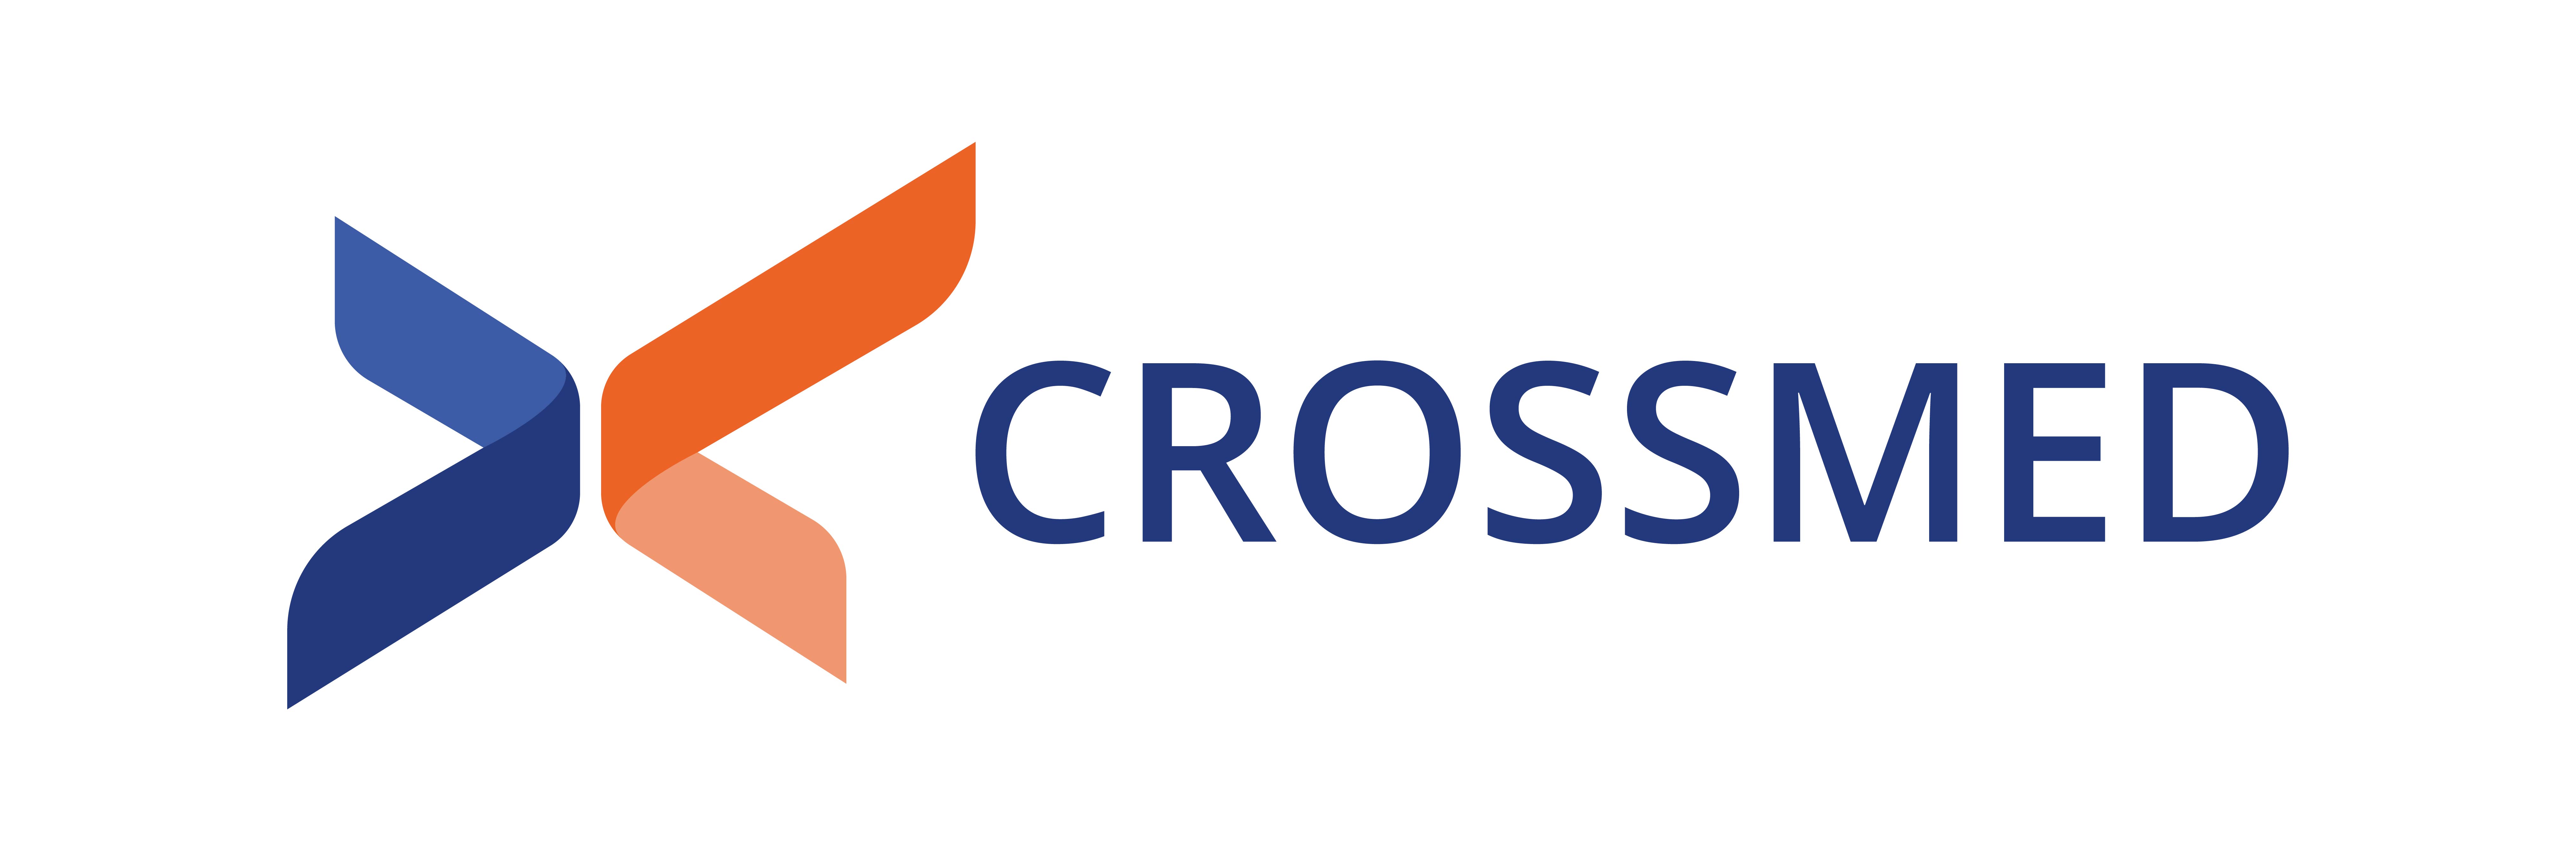 Crossmed logo